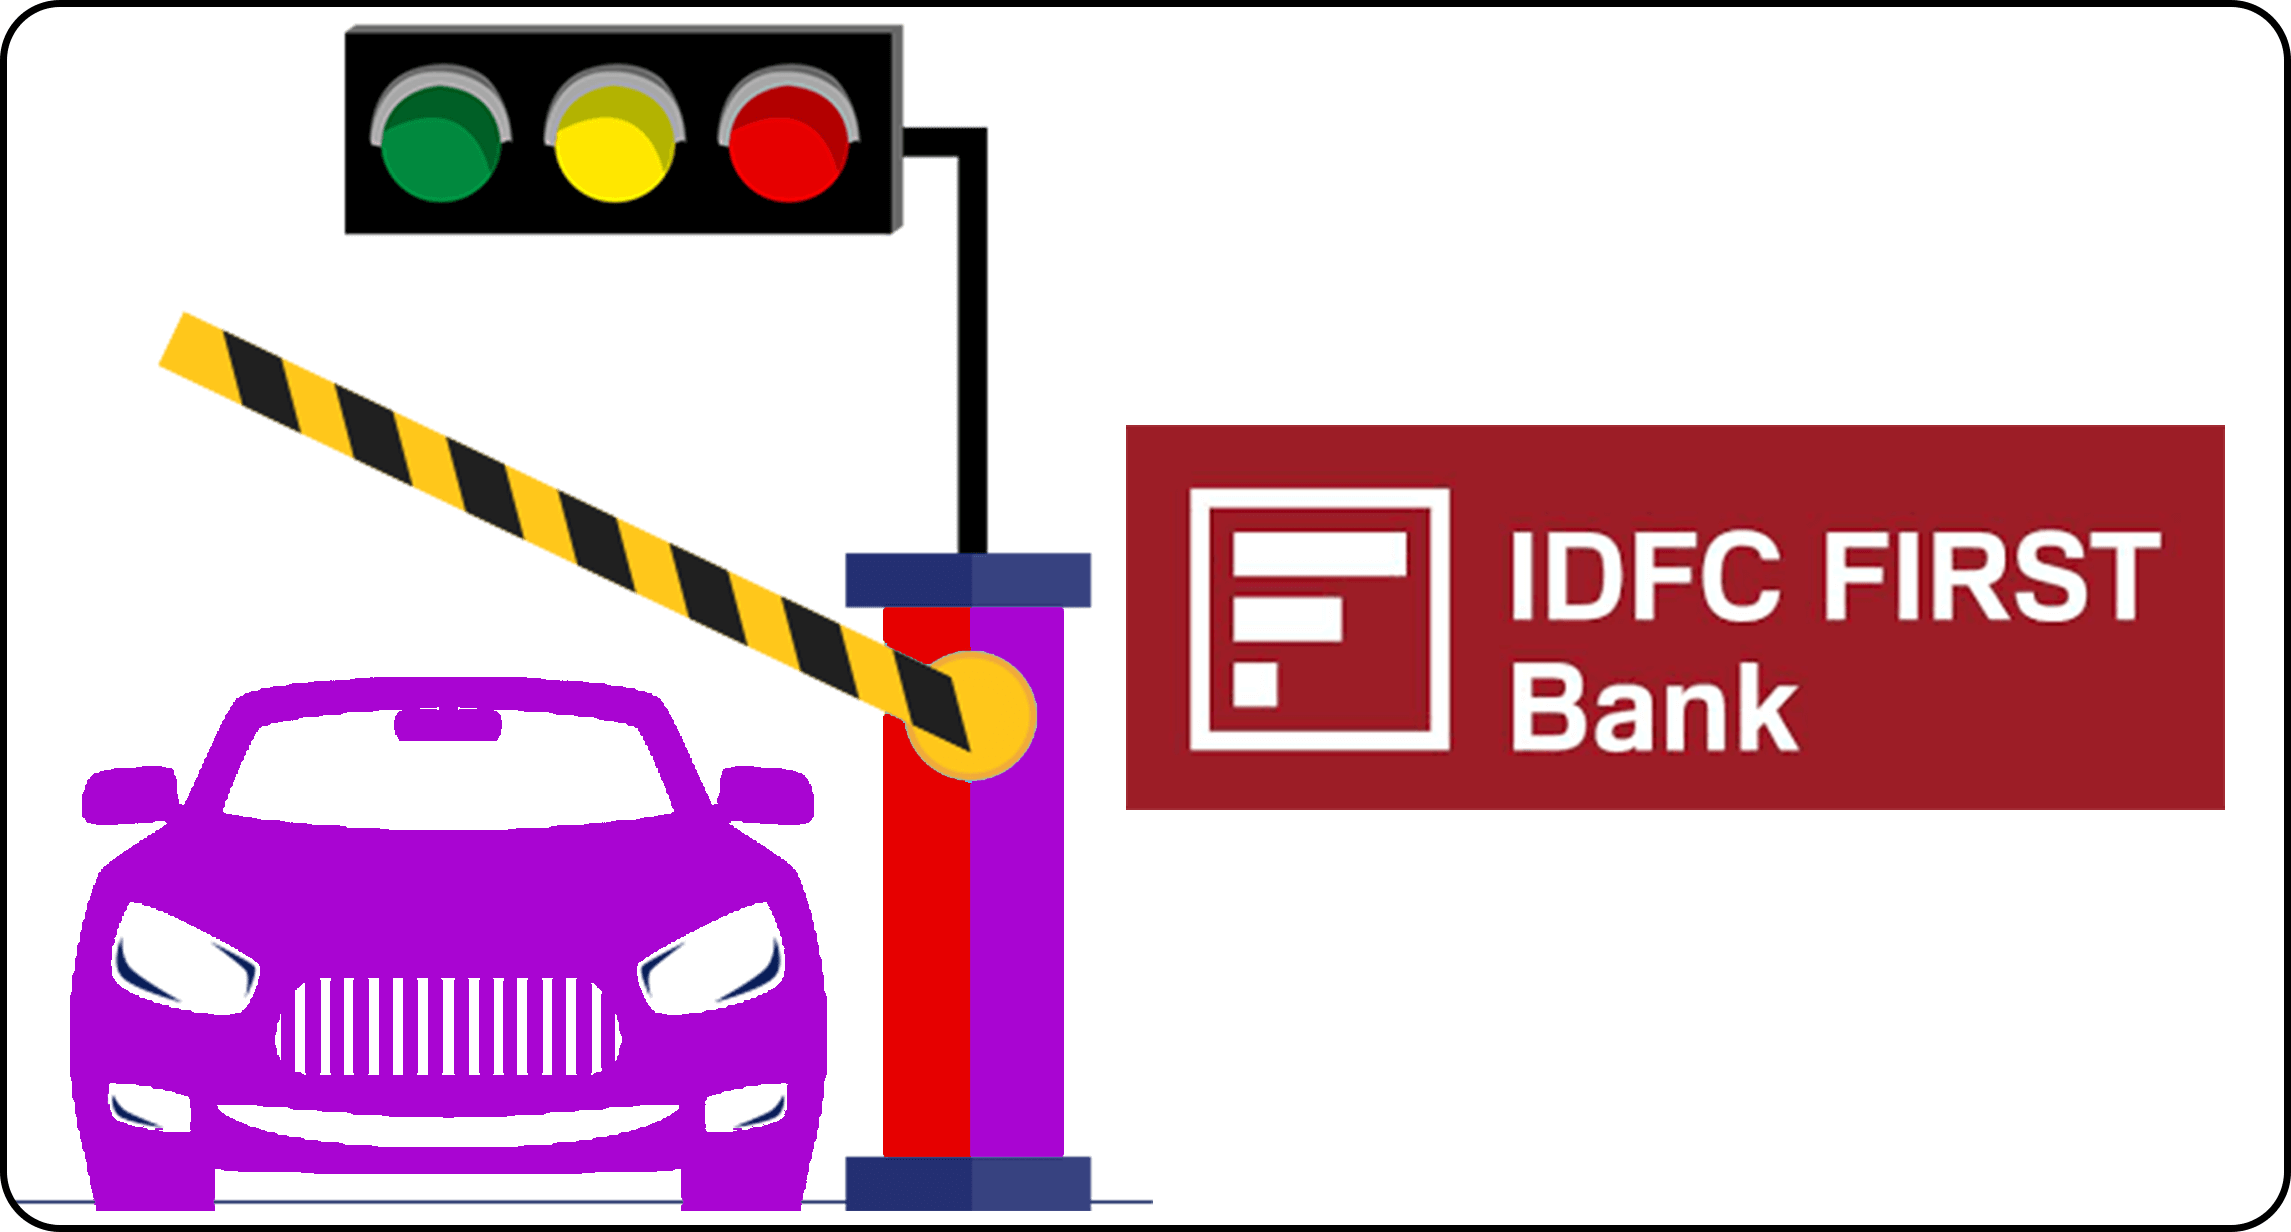 idfc first bank logo
